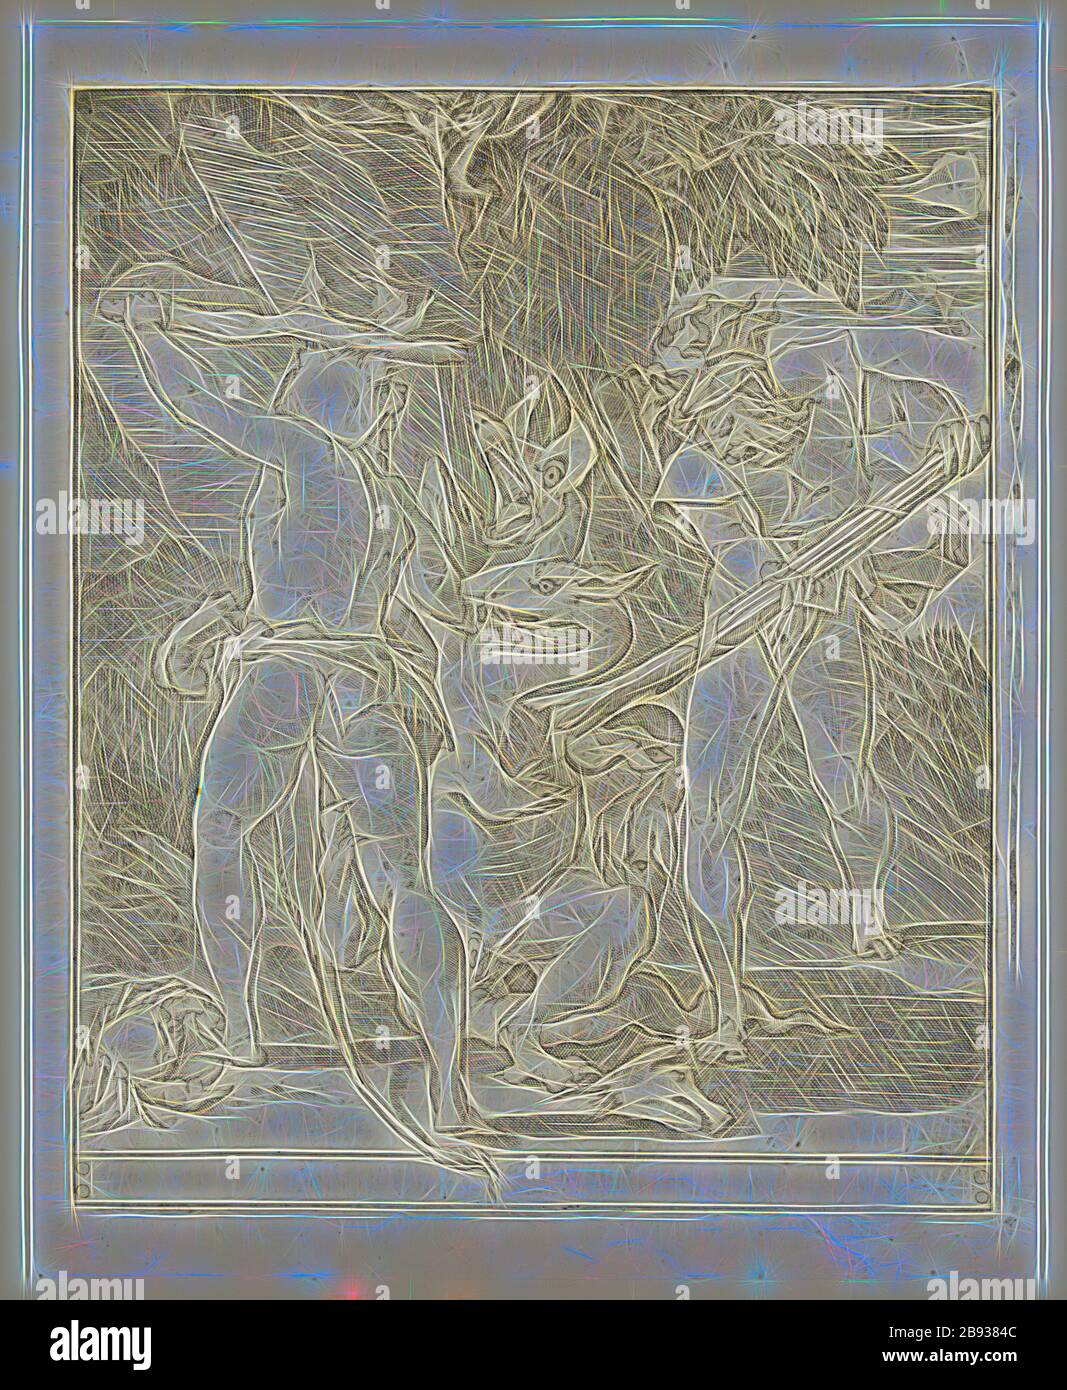 GIAN Jacopo Caraglio, Italien, 1500-1570, Hercules tuant l'Hydra de Lerna, entre 1500 et 1570, gravure imprimée à l'encre noire sur papier ponté, plaque: 8 5/8 × 7 1/8 pouces (21.9 × 18.1 cm), repensée par Gibon, conception de glanissement chaud et gaie de rayons de lumière radiance. L'art classique réinventé avec une touche moderne. La photographie inspirée du futurisme, qui embrasse l'énergie dynamique de la technologie moderne, du mouvement, de la vitesse et révolutionne la culture. Banque D'Images